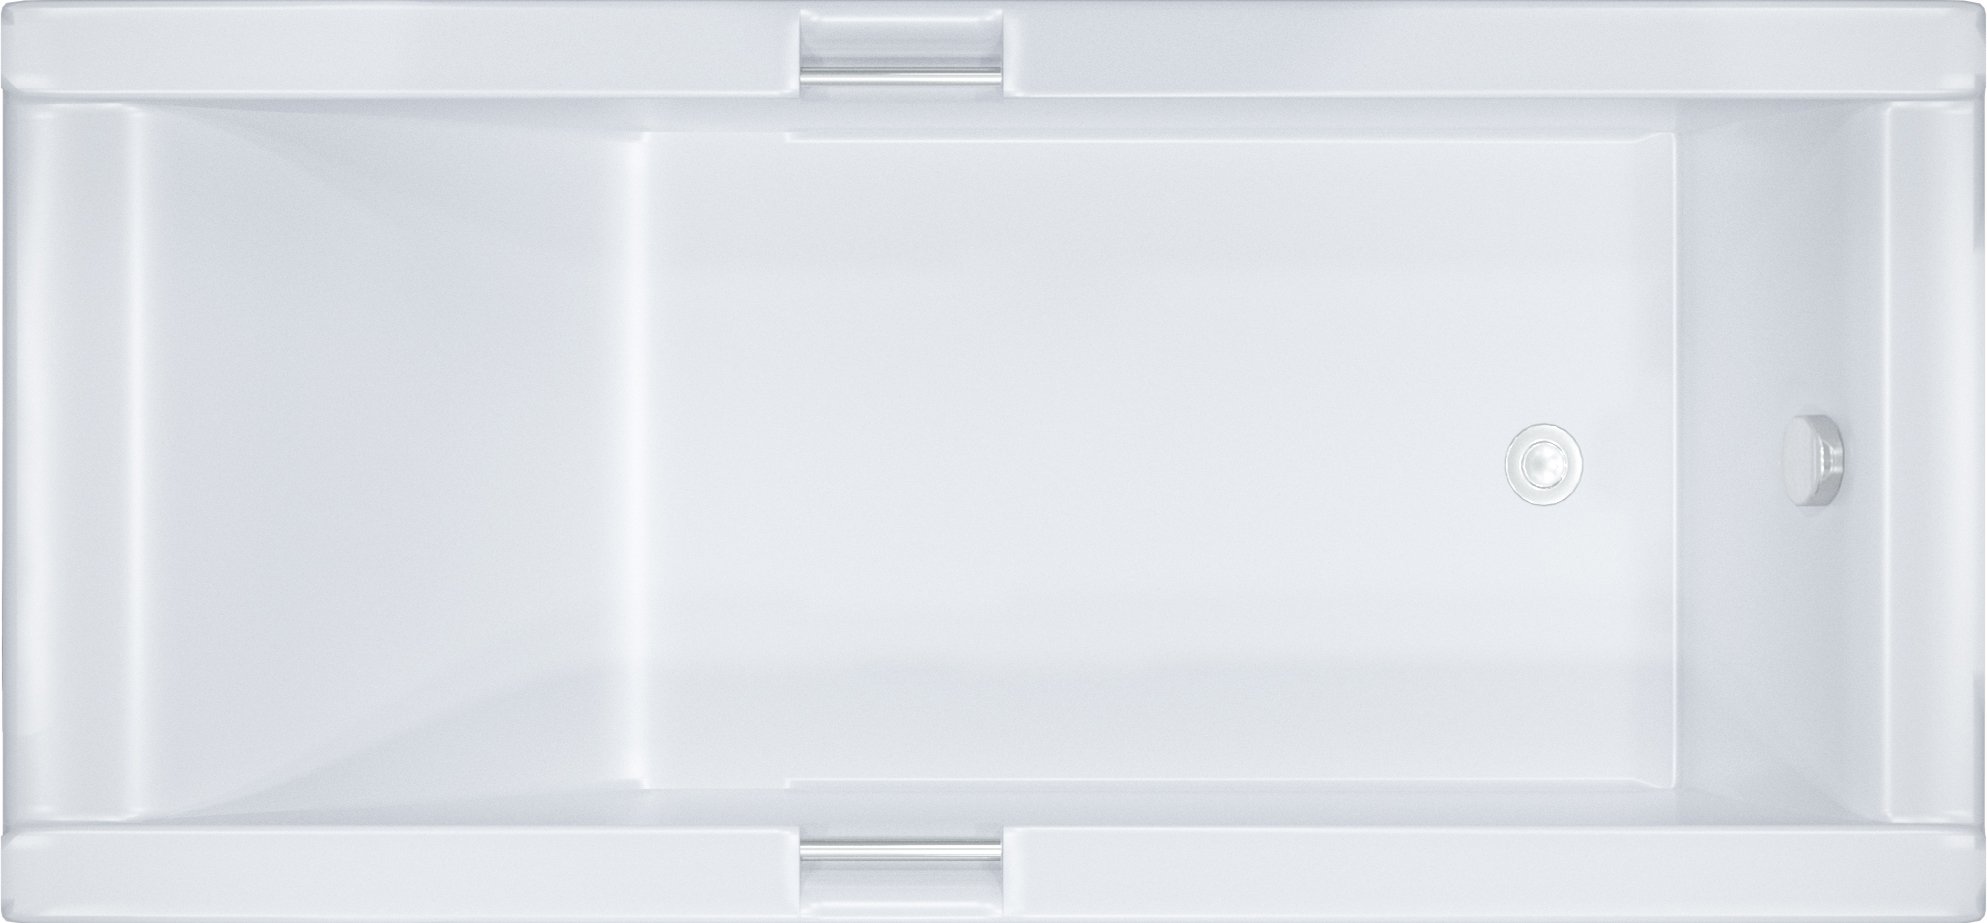 Купить Акриловая ванна Triton Александрия 160x75 см (Н0000100391), белый, акрил